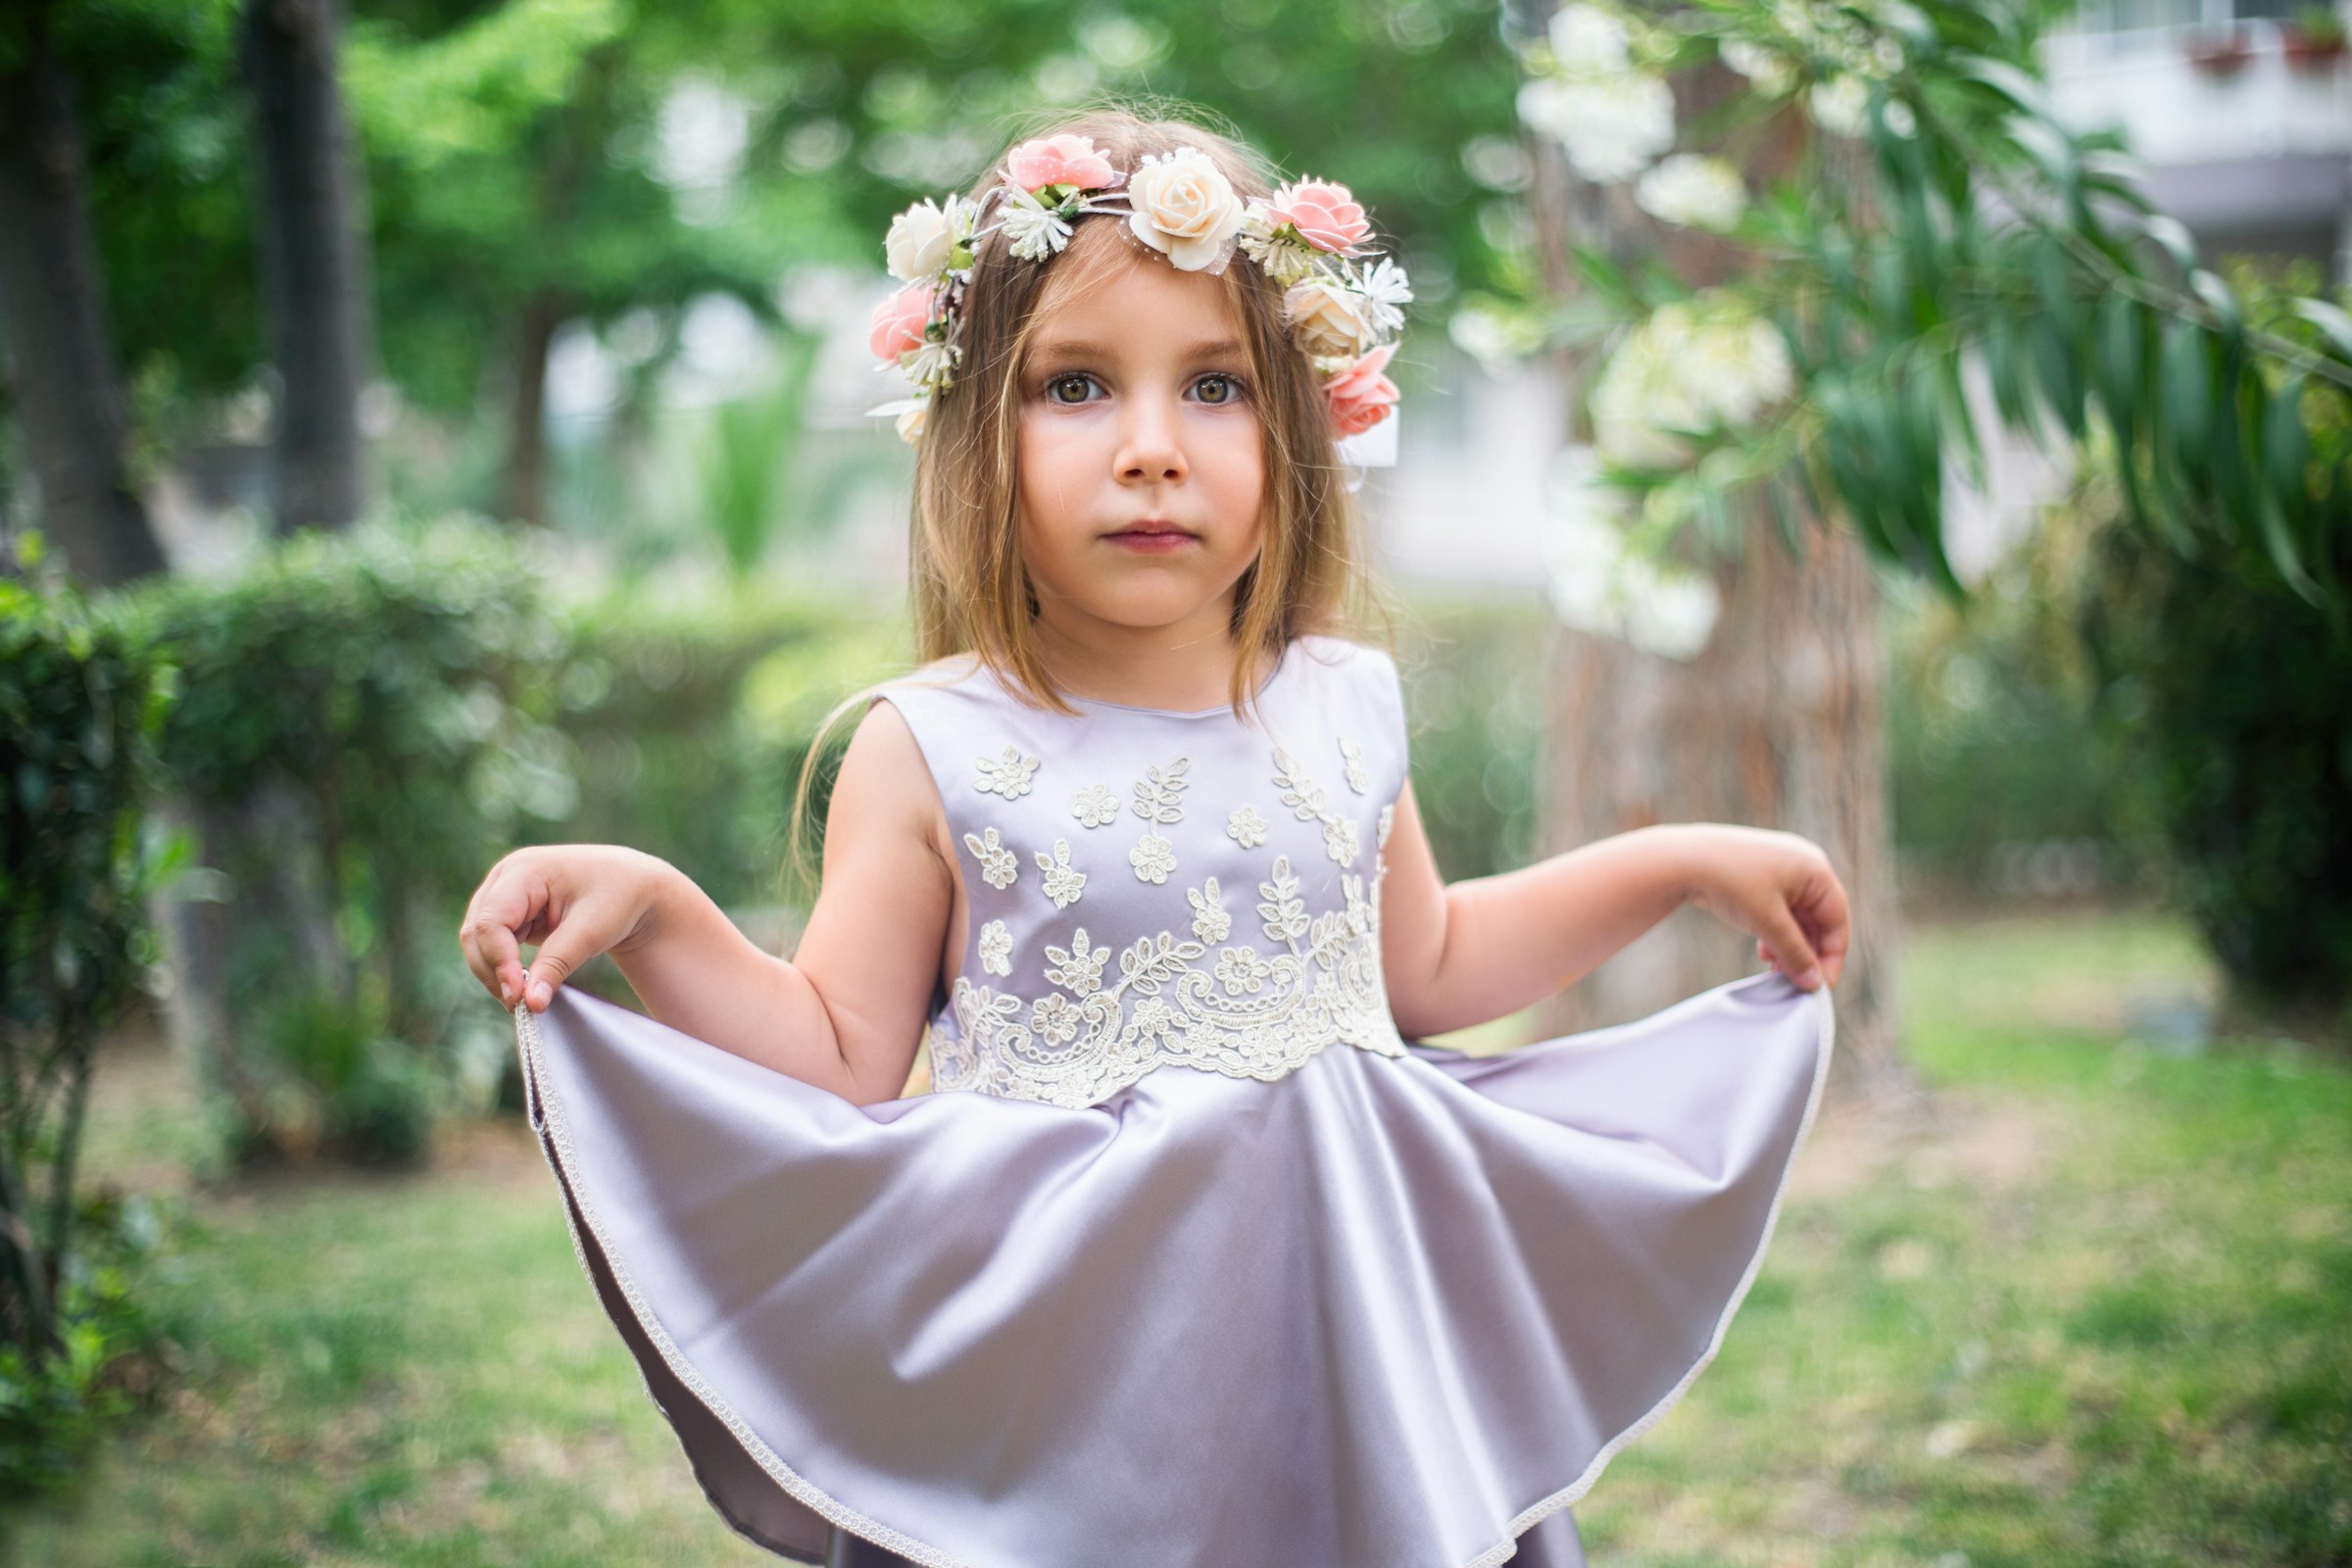 Kleines Mädchen als Blumenmädchen gekleidet | Quelle: Unsplash